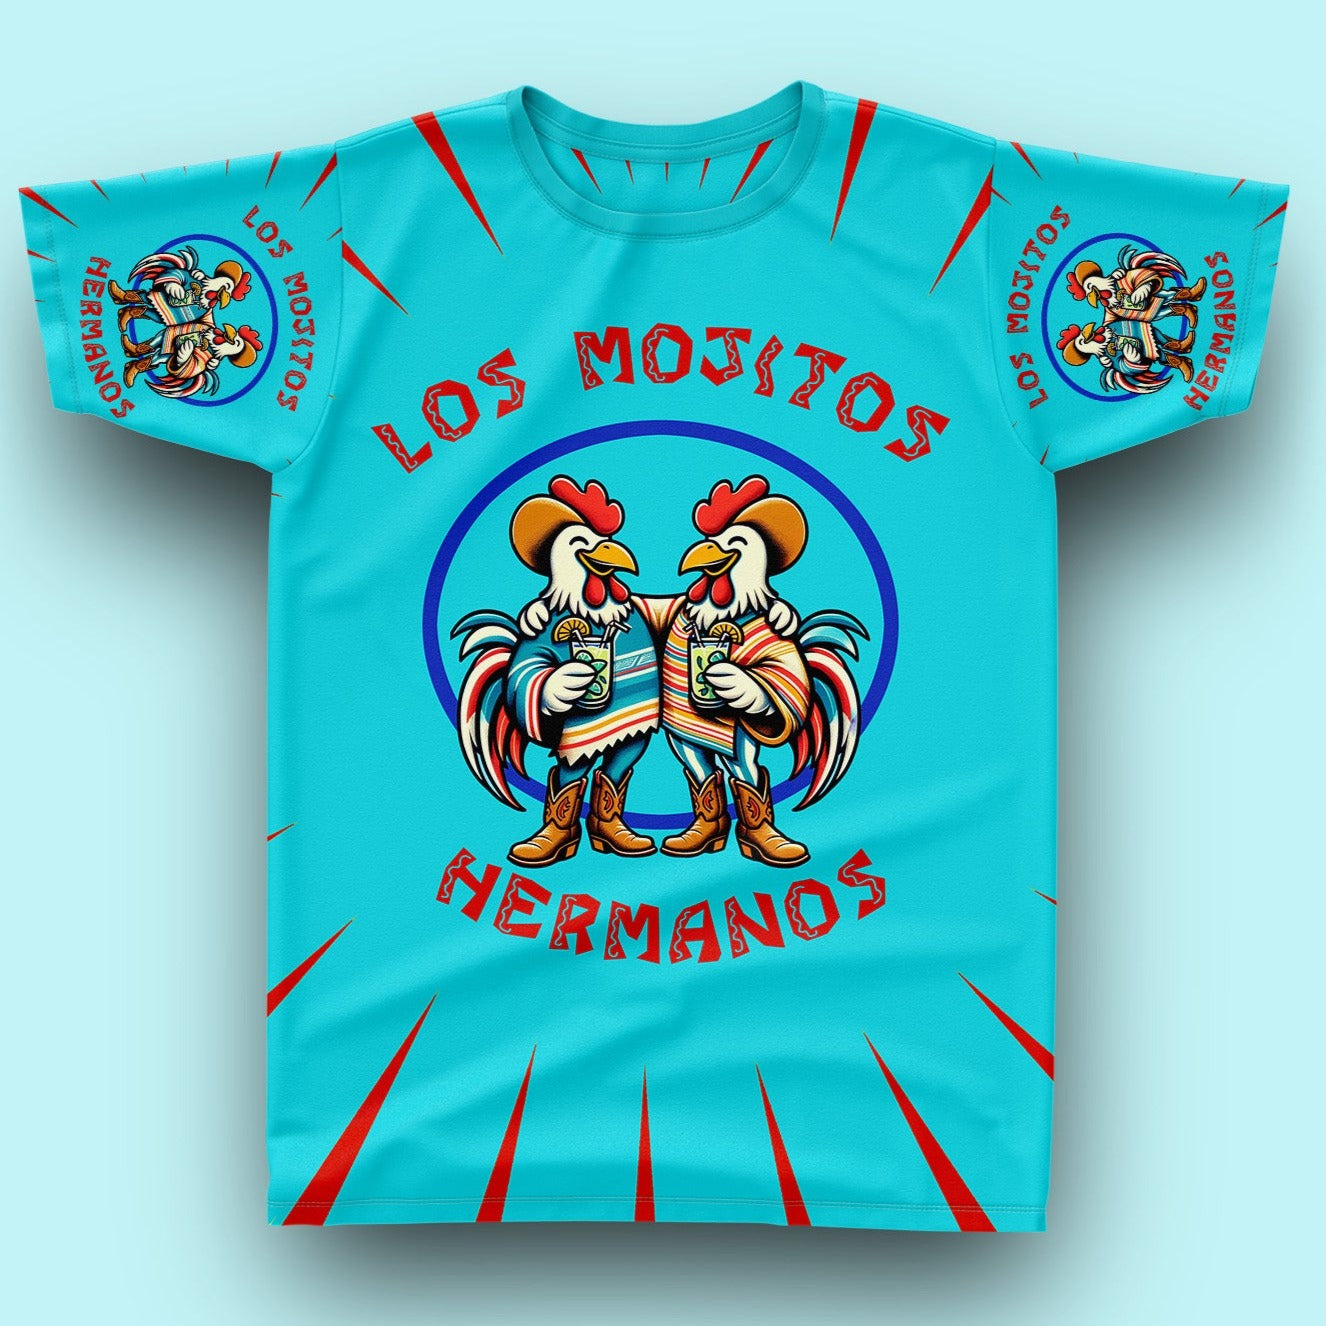 LOS MOJITOS - Fullprint Shirt